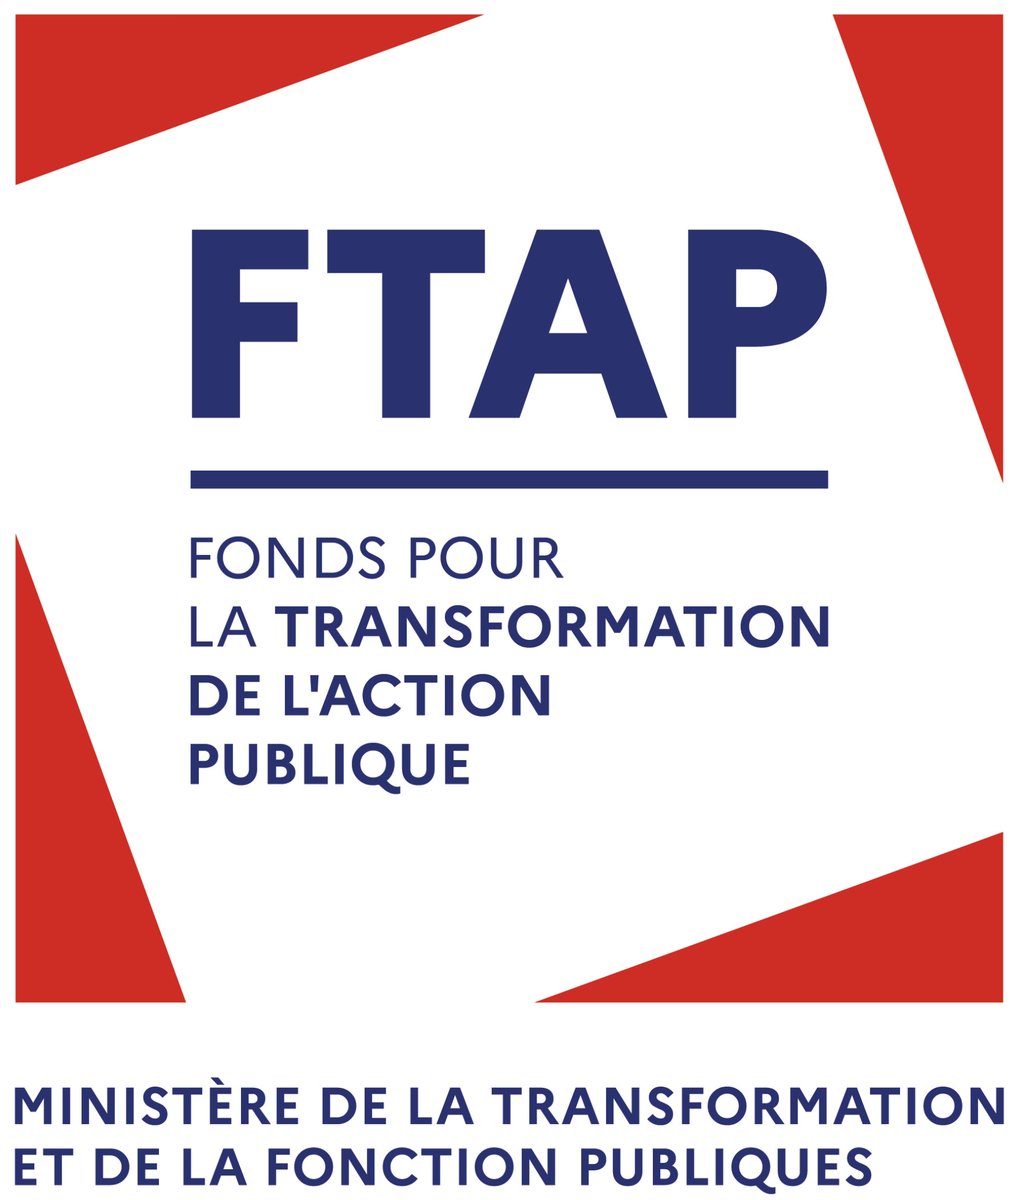 Depuis sa création, France Identité a bénéficié d’un soutien du Fonds pour la transformation de l’action publique à hauteur de 27 M€. Merci France Identité répond aux objectifs du #FTAP: investir dans les projets qui améliorent l’efficacité de l’action publique pour les usagers.